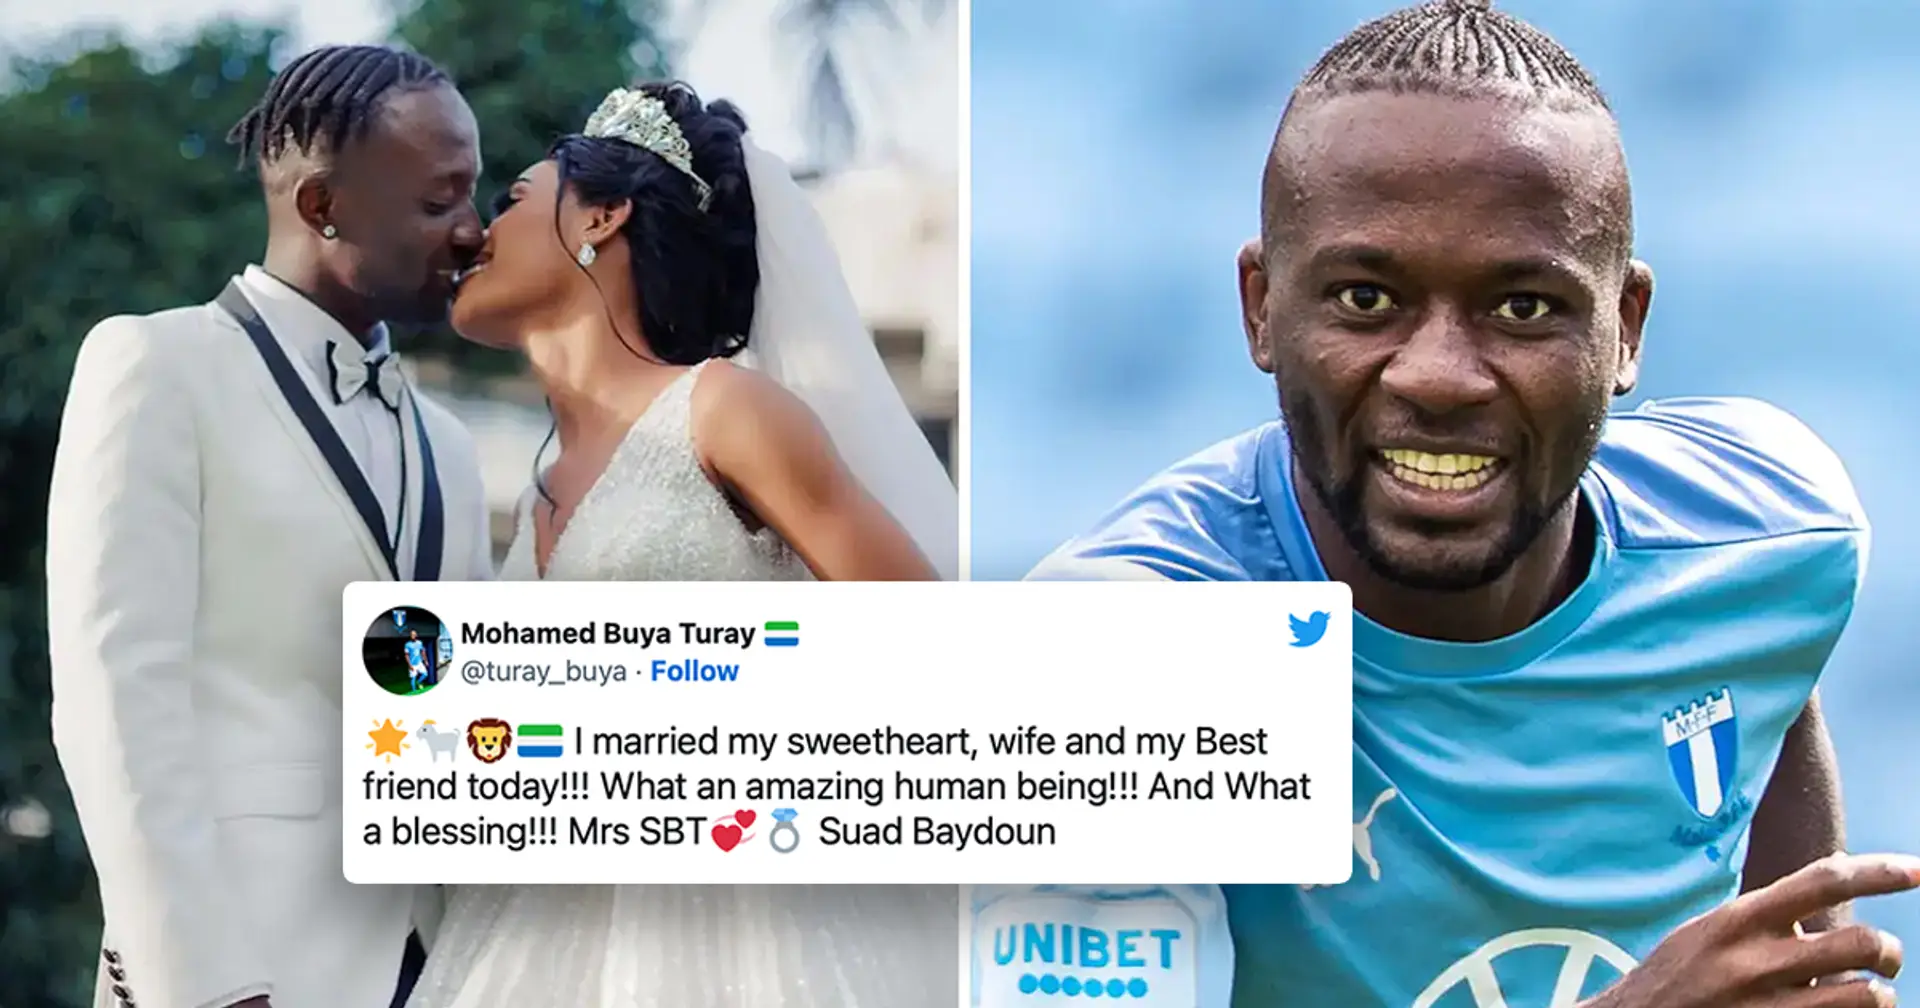 Malmö-Spieler Buya Turay verpasste seine eigene Hochzeit und bat seinen Bruder, ihn bei der Hochzeitszeremonie zu ersetzen